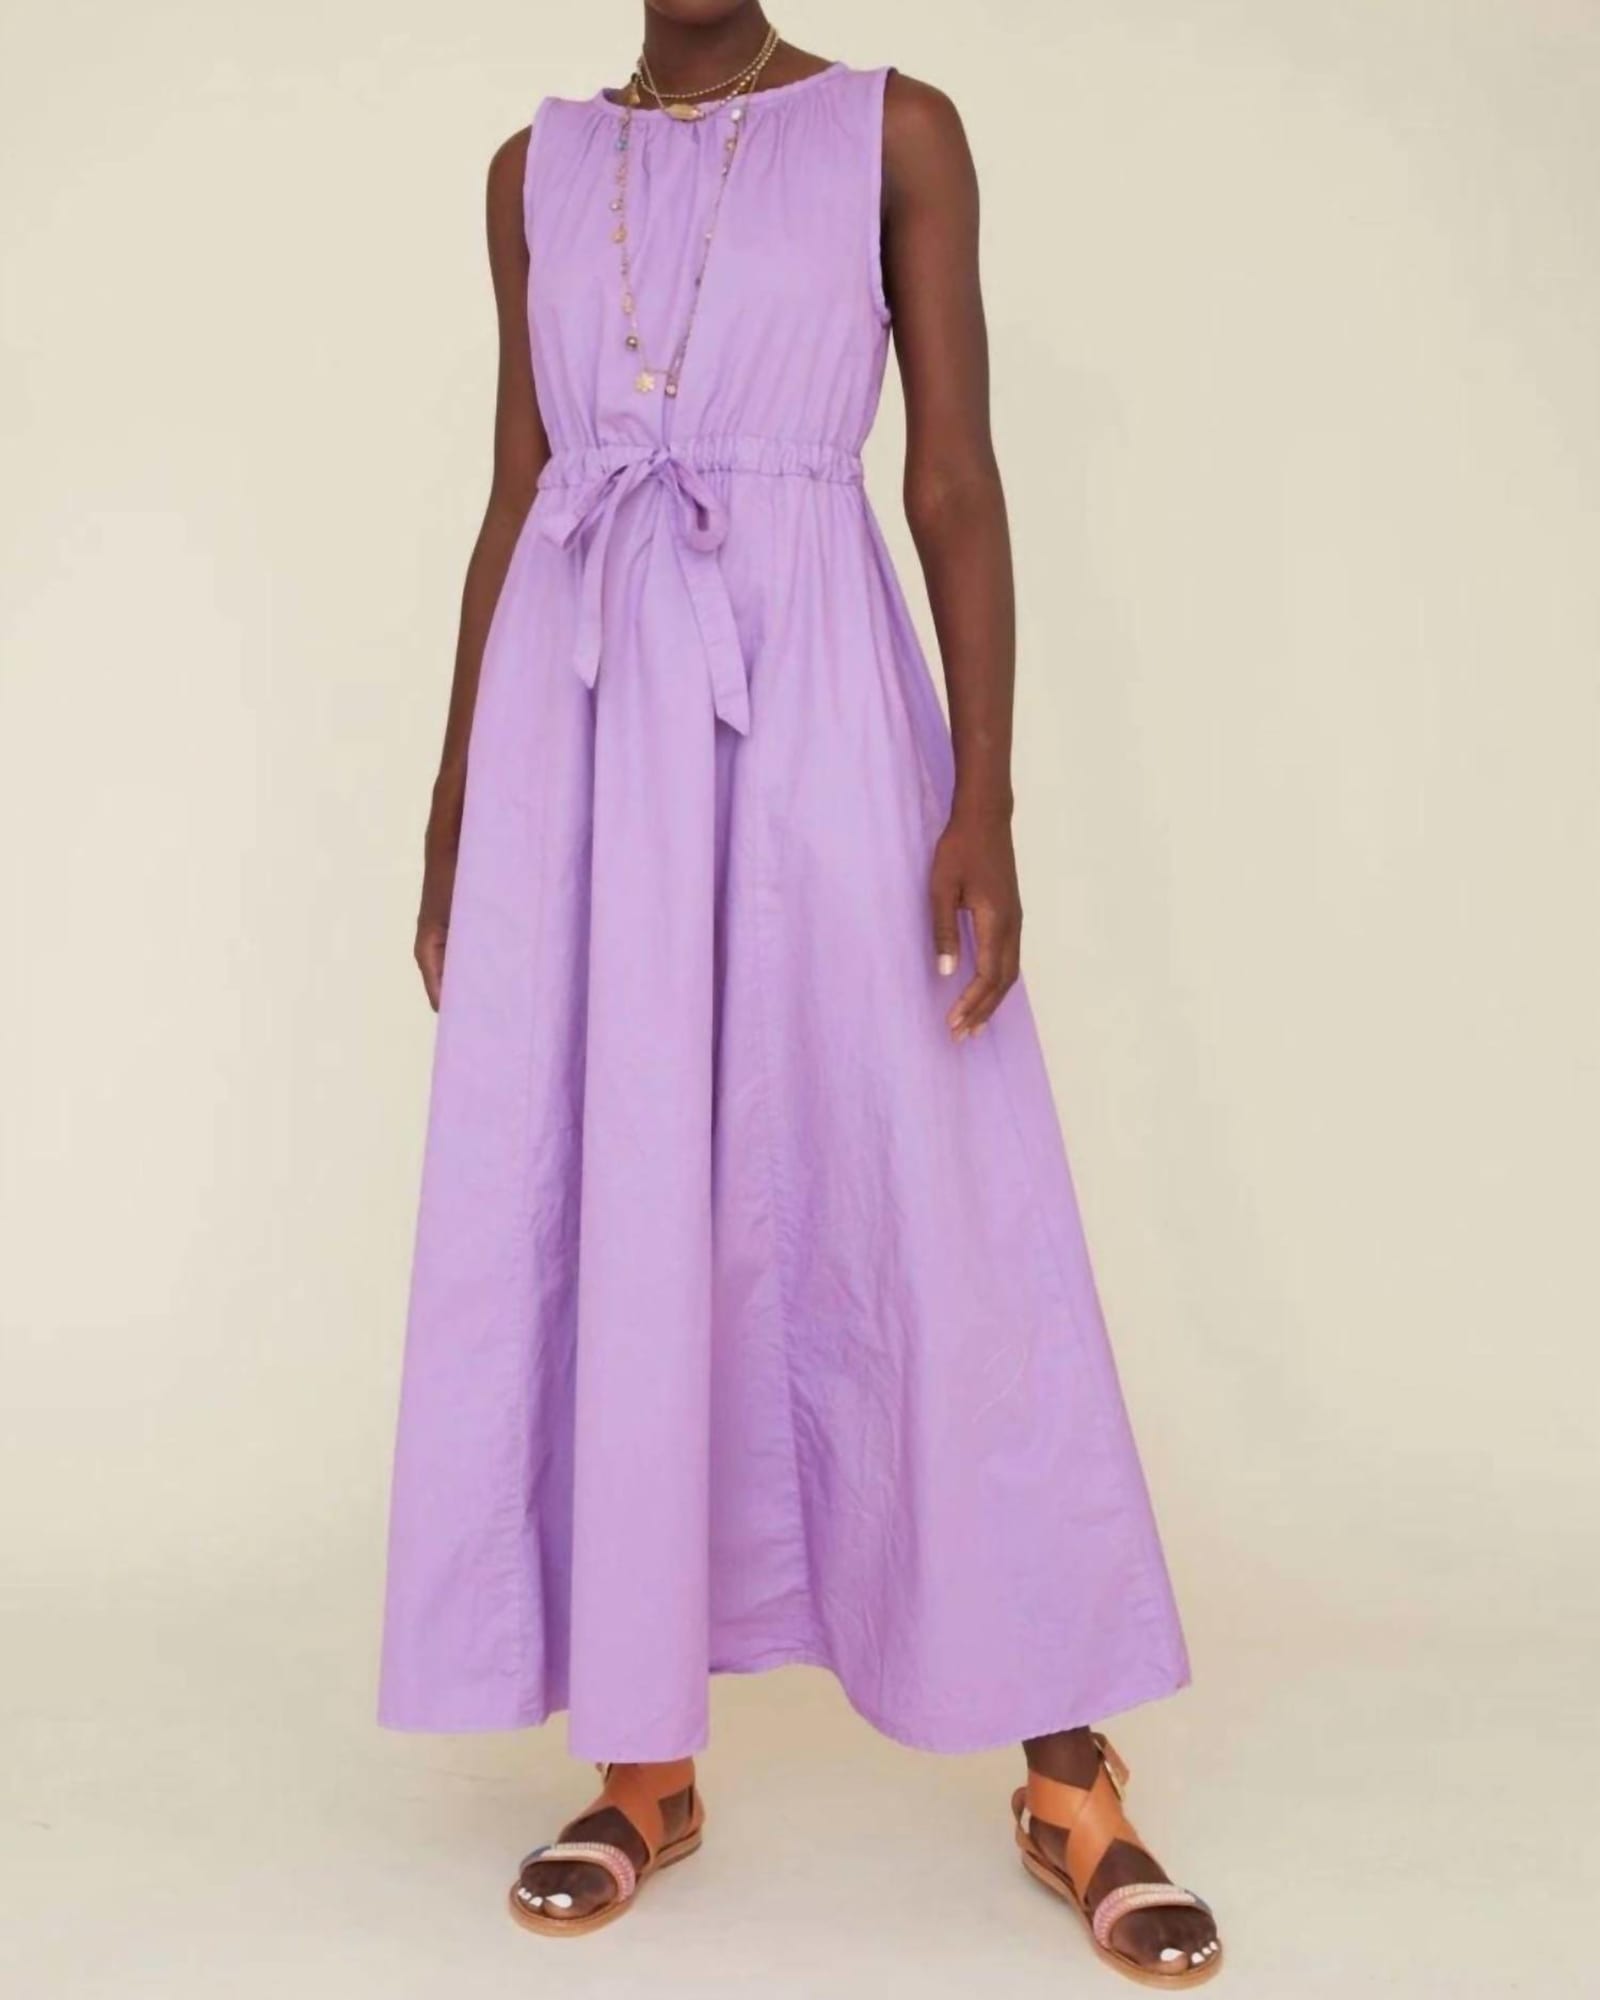 Rhiannon Dress in Wild Violet | Wild Violet